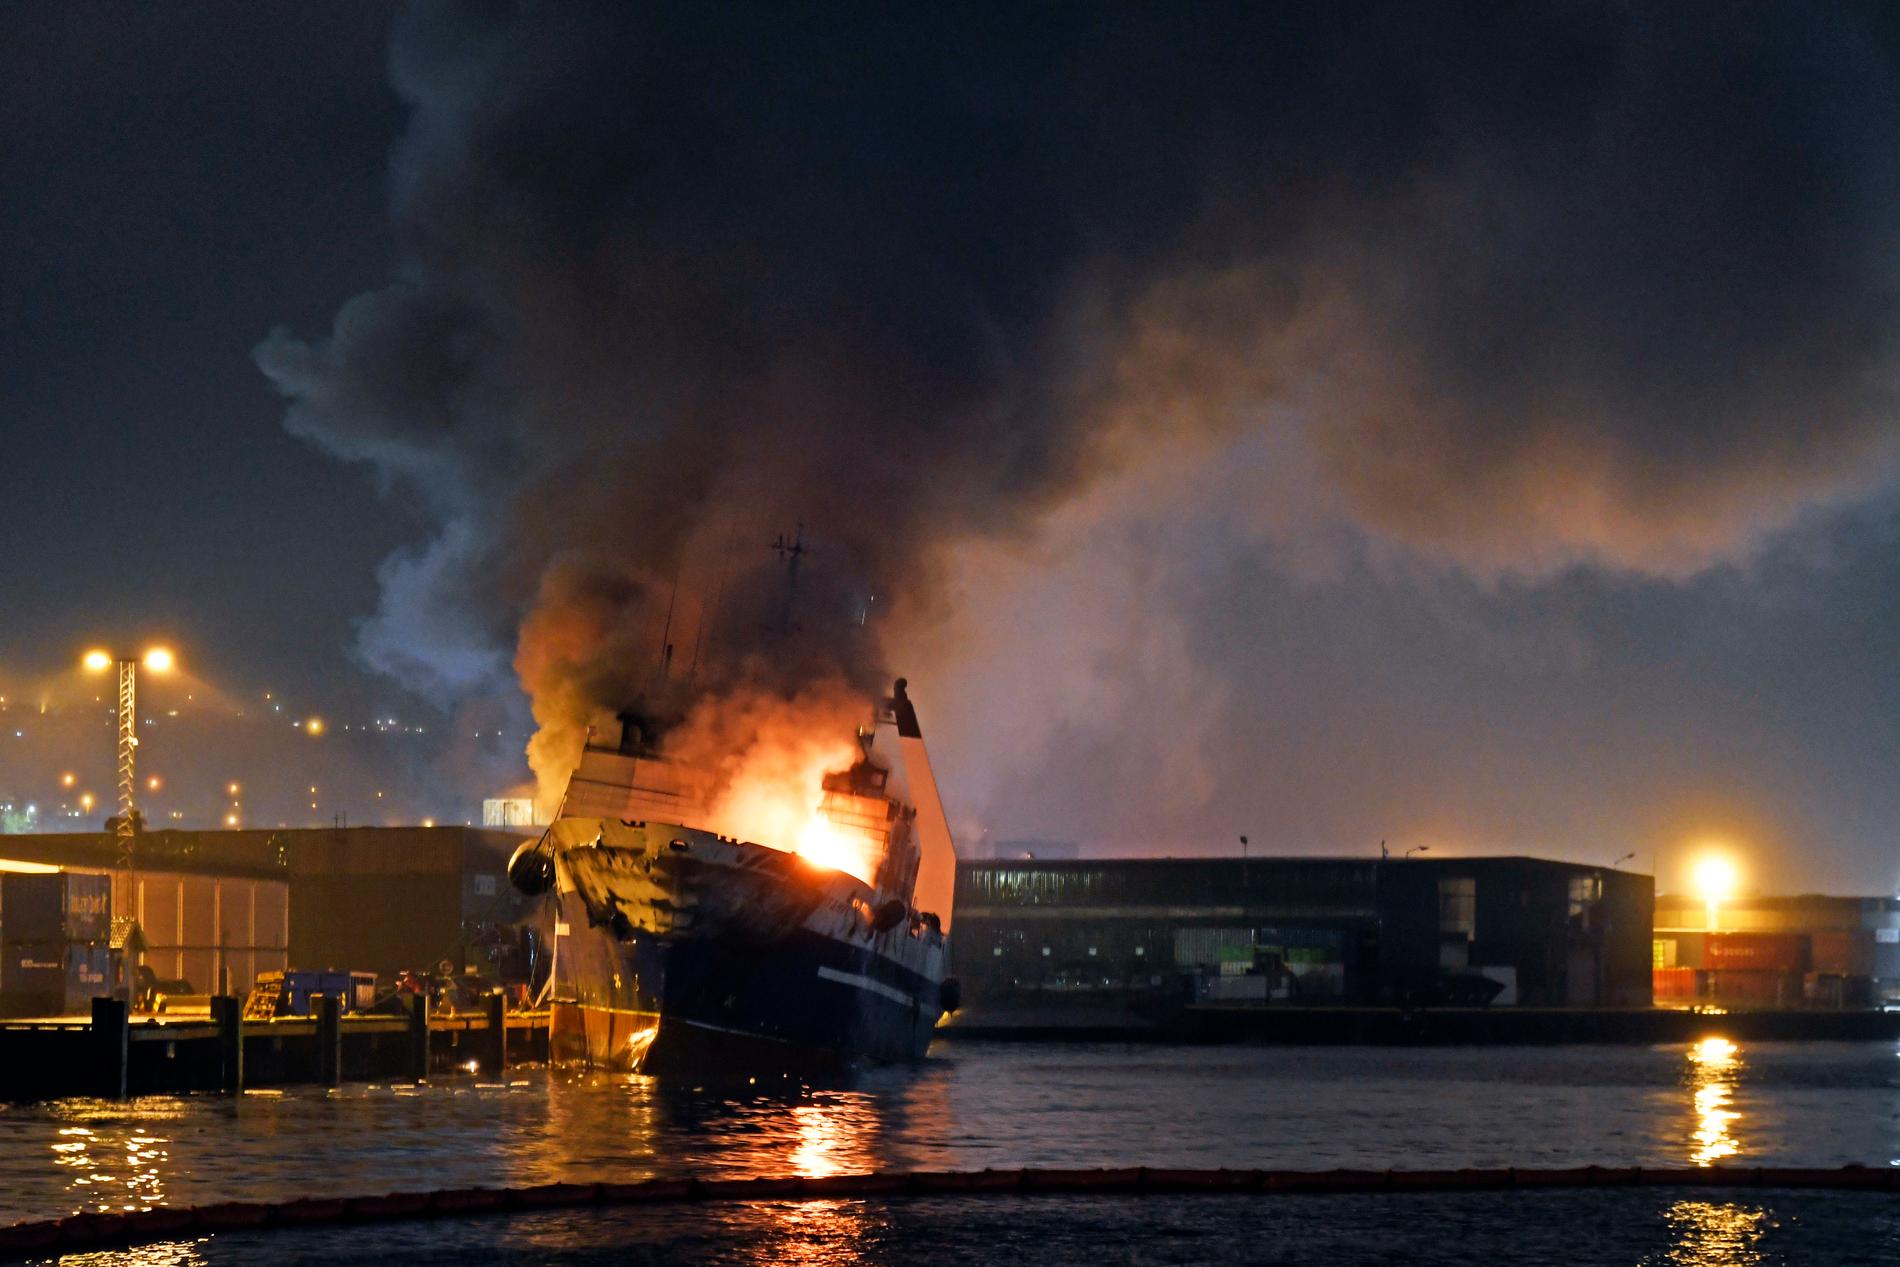 Norska brandkåren valde att tippa båten i vattnet.